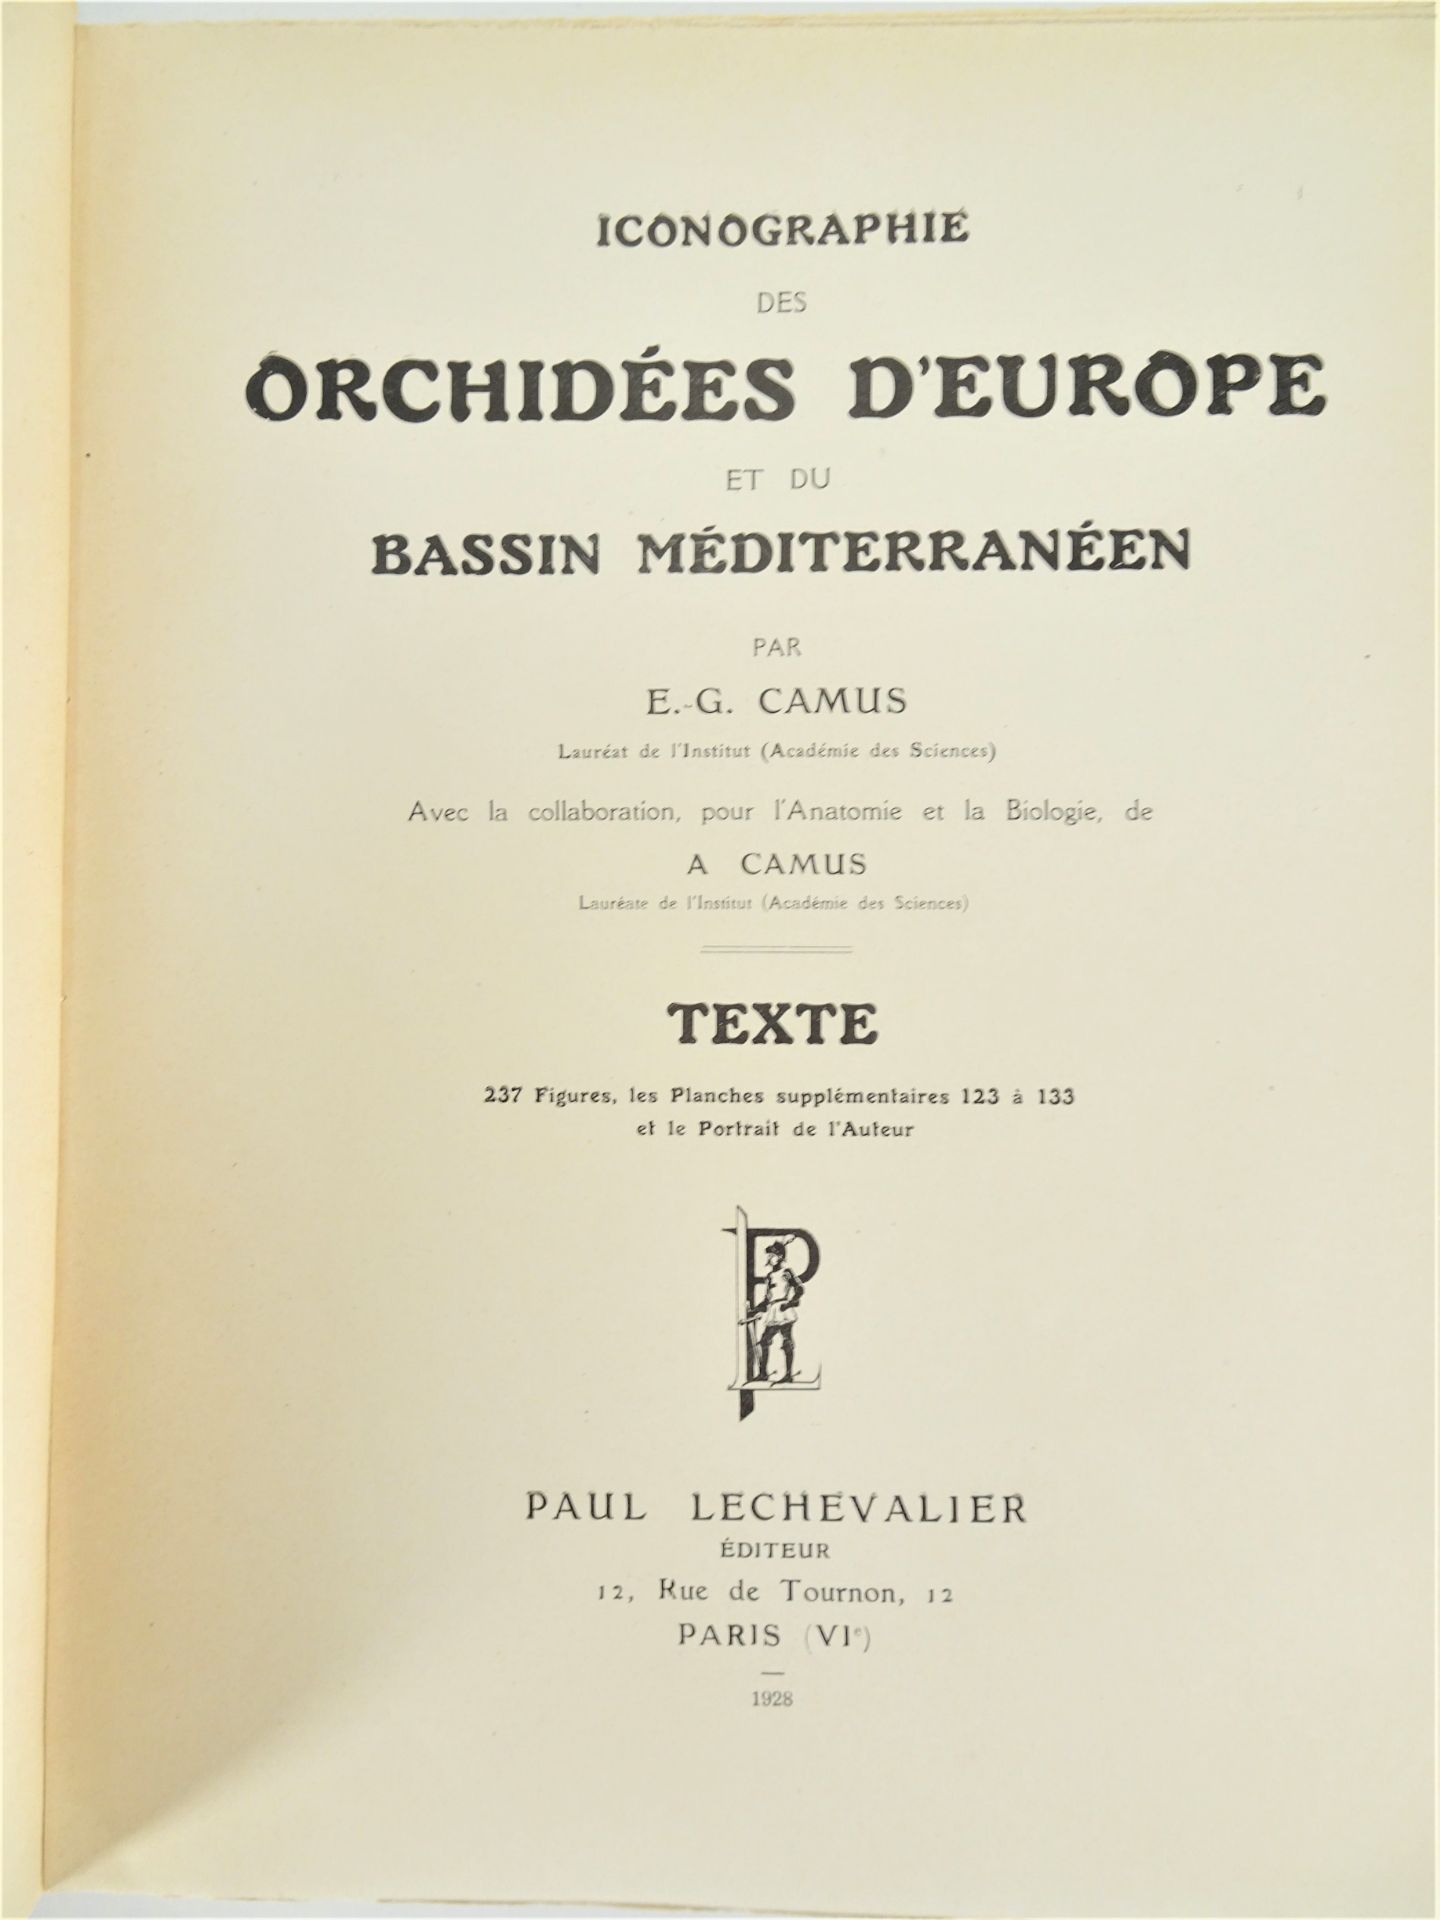 |Orchidaceae| E. G. Camus, "Iconographie des Orchidées d'Europe et du Bassin Méditerranéen", - Image 2 of 14